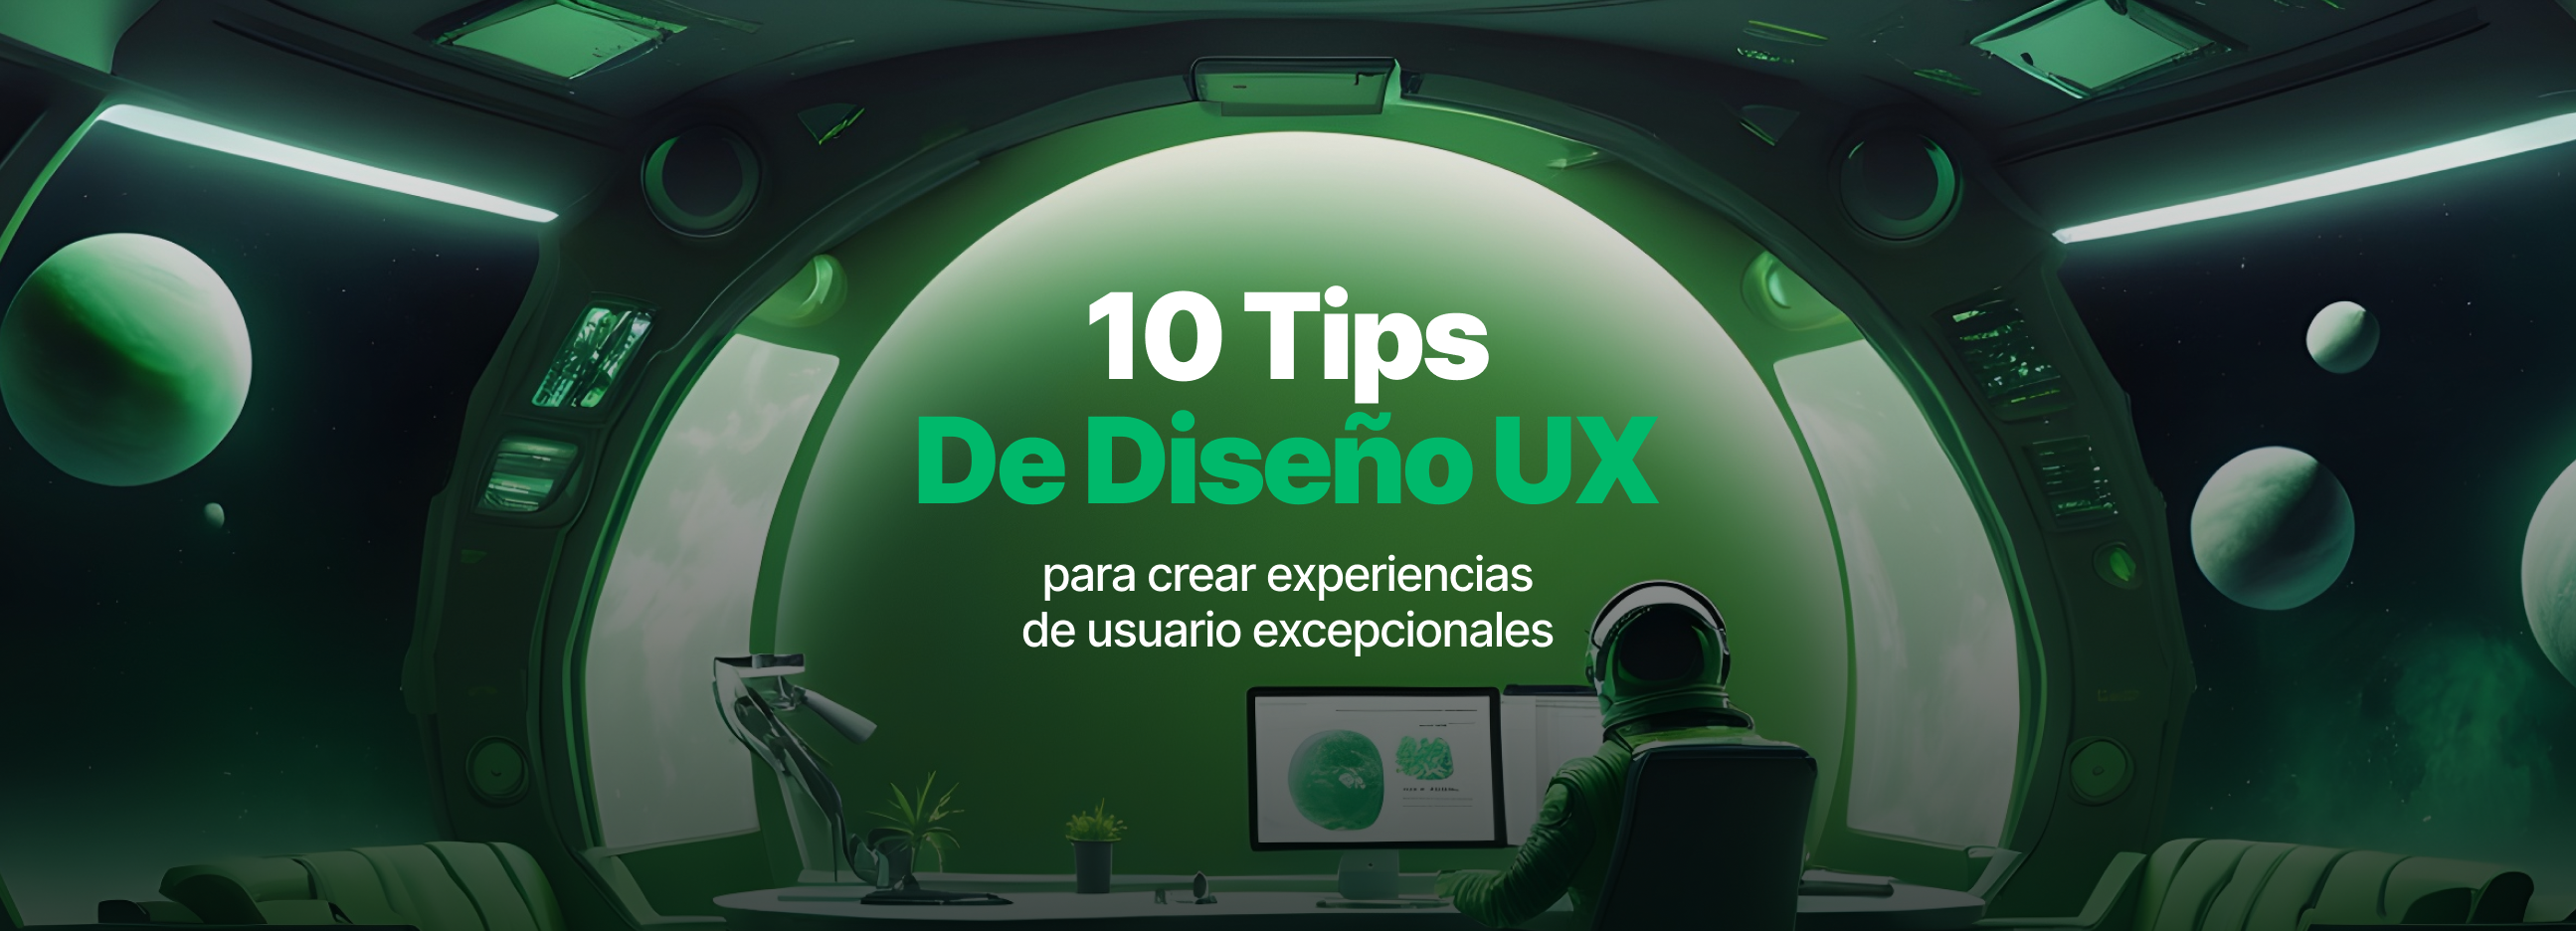 10 Tips de Diseño UX para crear experiencias de usuario excepcionales